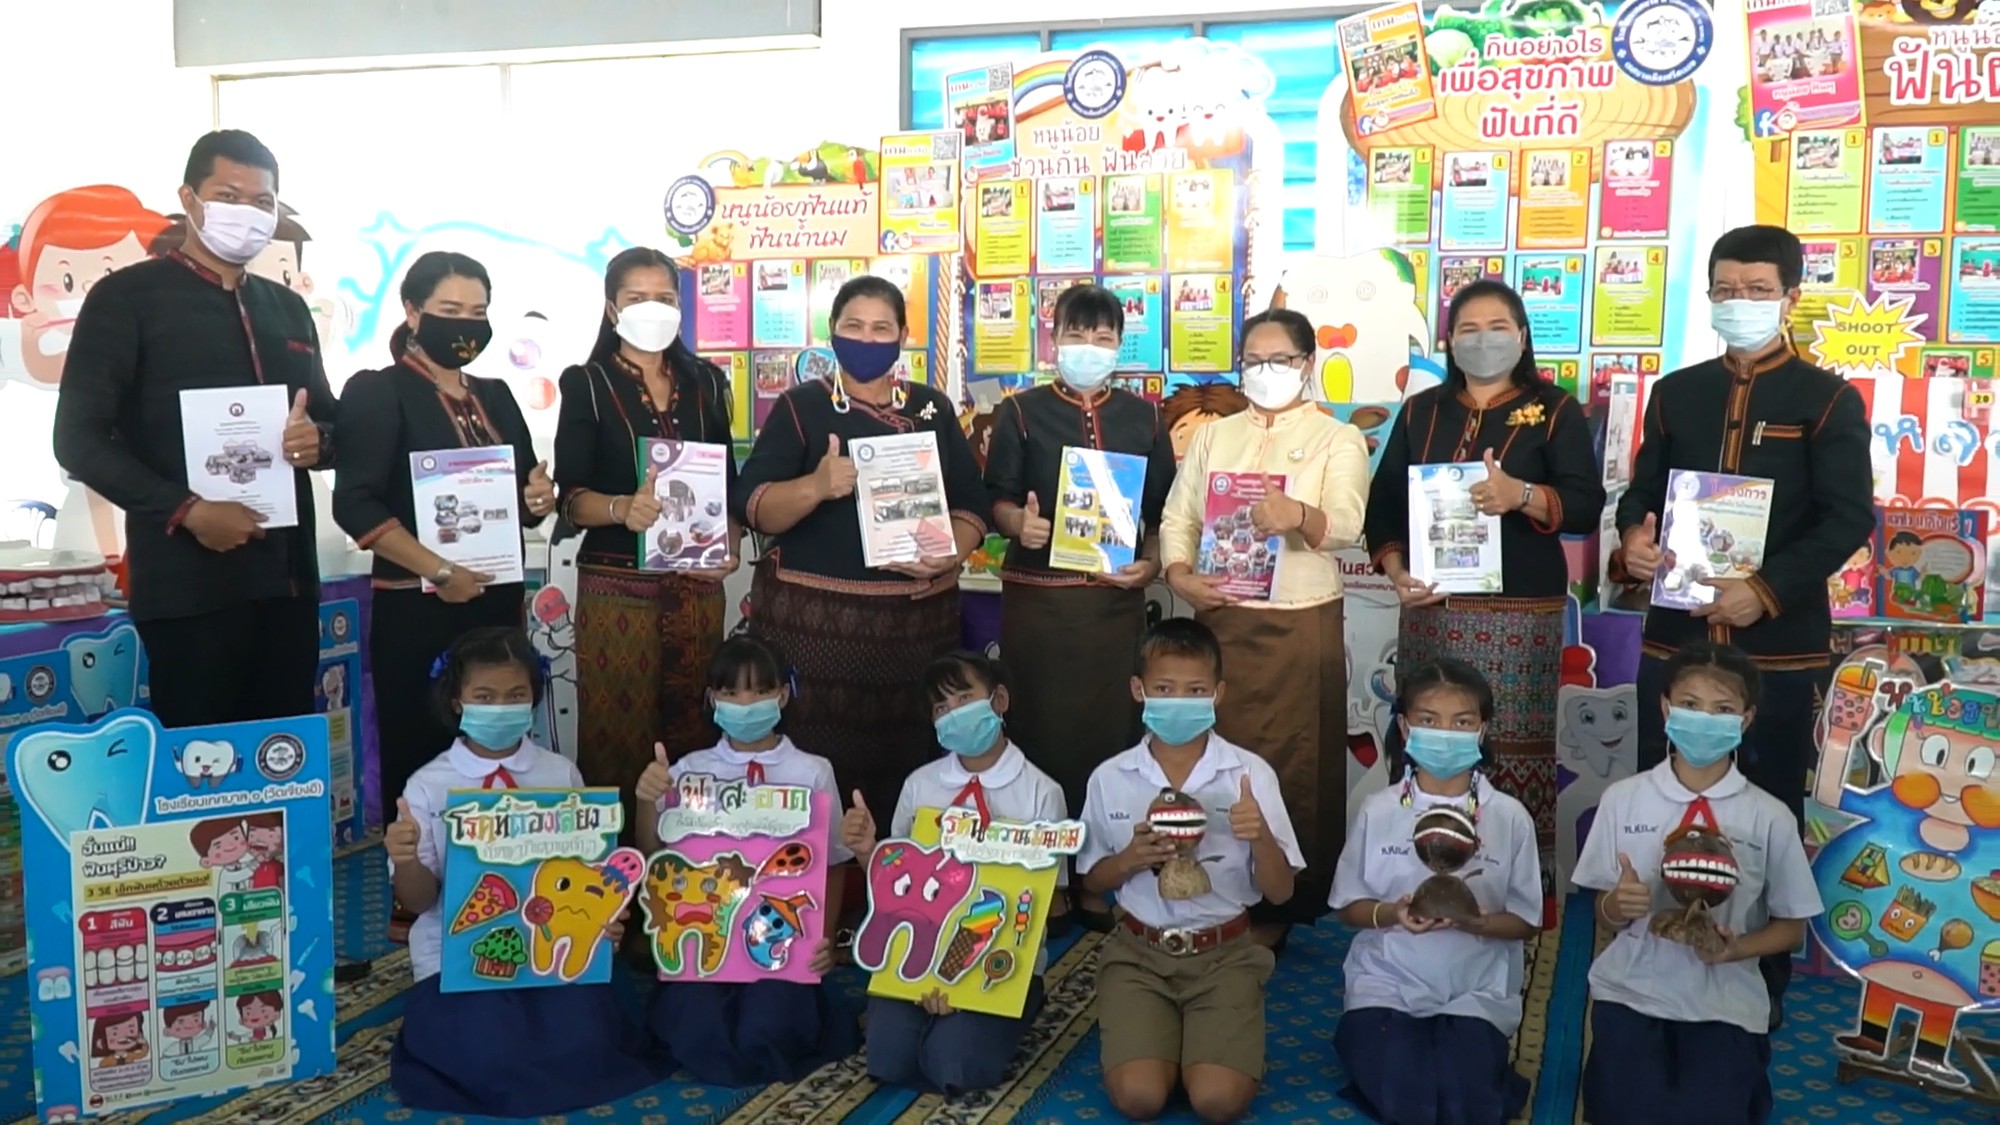 ไลอ้อน สนับสนุนผลงานทันตสาธารณสุขไทย ผ่านโครงการ Lion Oral Health Award มุ่งส่งเสริมให้คนไทยดูแลสุขภาพช่องปาก ประตูสำคัญสู่การมีสุขภาพร่างกายที่ดี